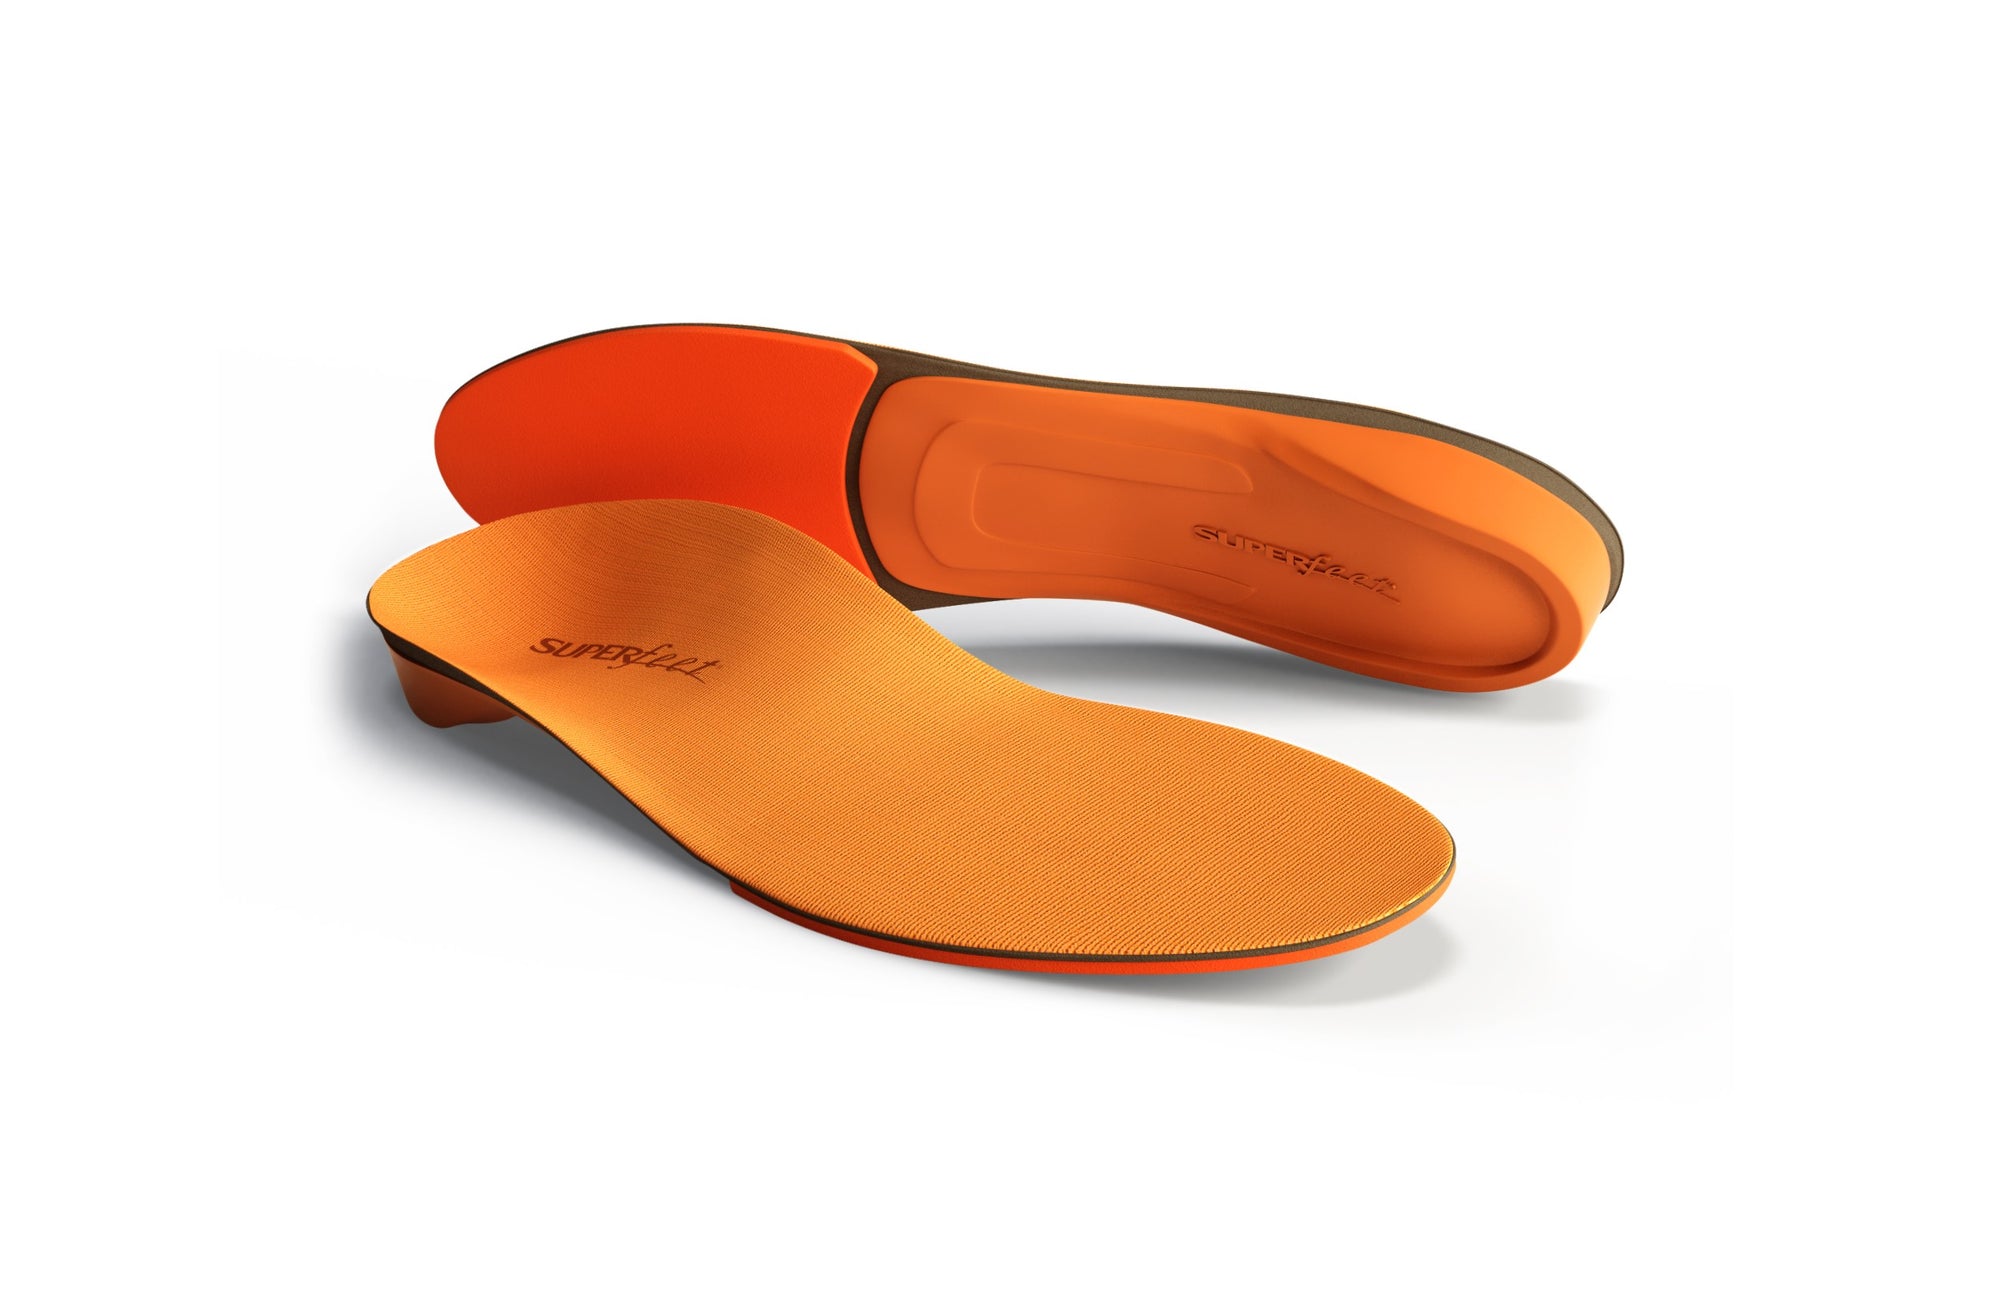 Superfeet Unisex Orange High Impact Performance Insole - Work World - Workwear, Work Boots, Safety Gear